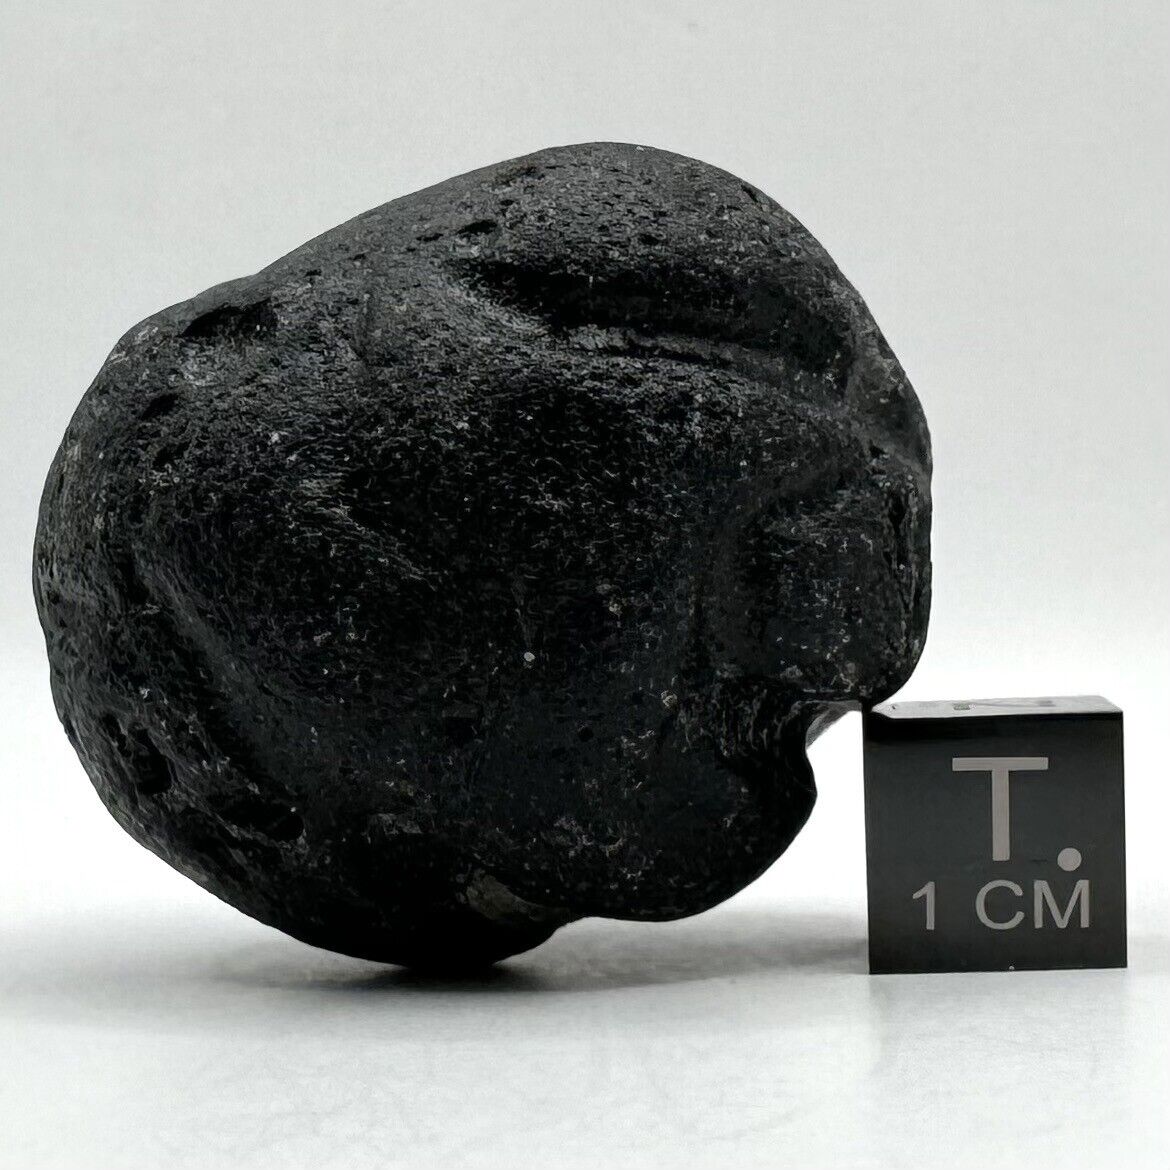 46g BIKOLITE PHILIPPINES TEKTITE - Philippinite Rizalite Bicolite Meteorite